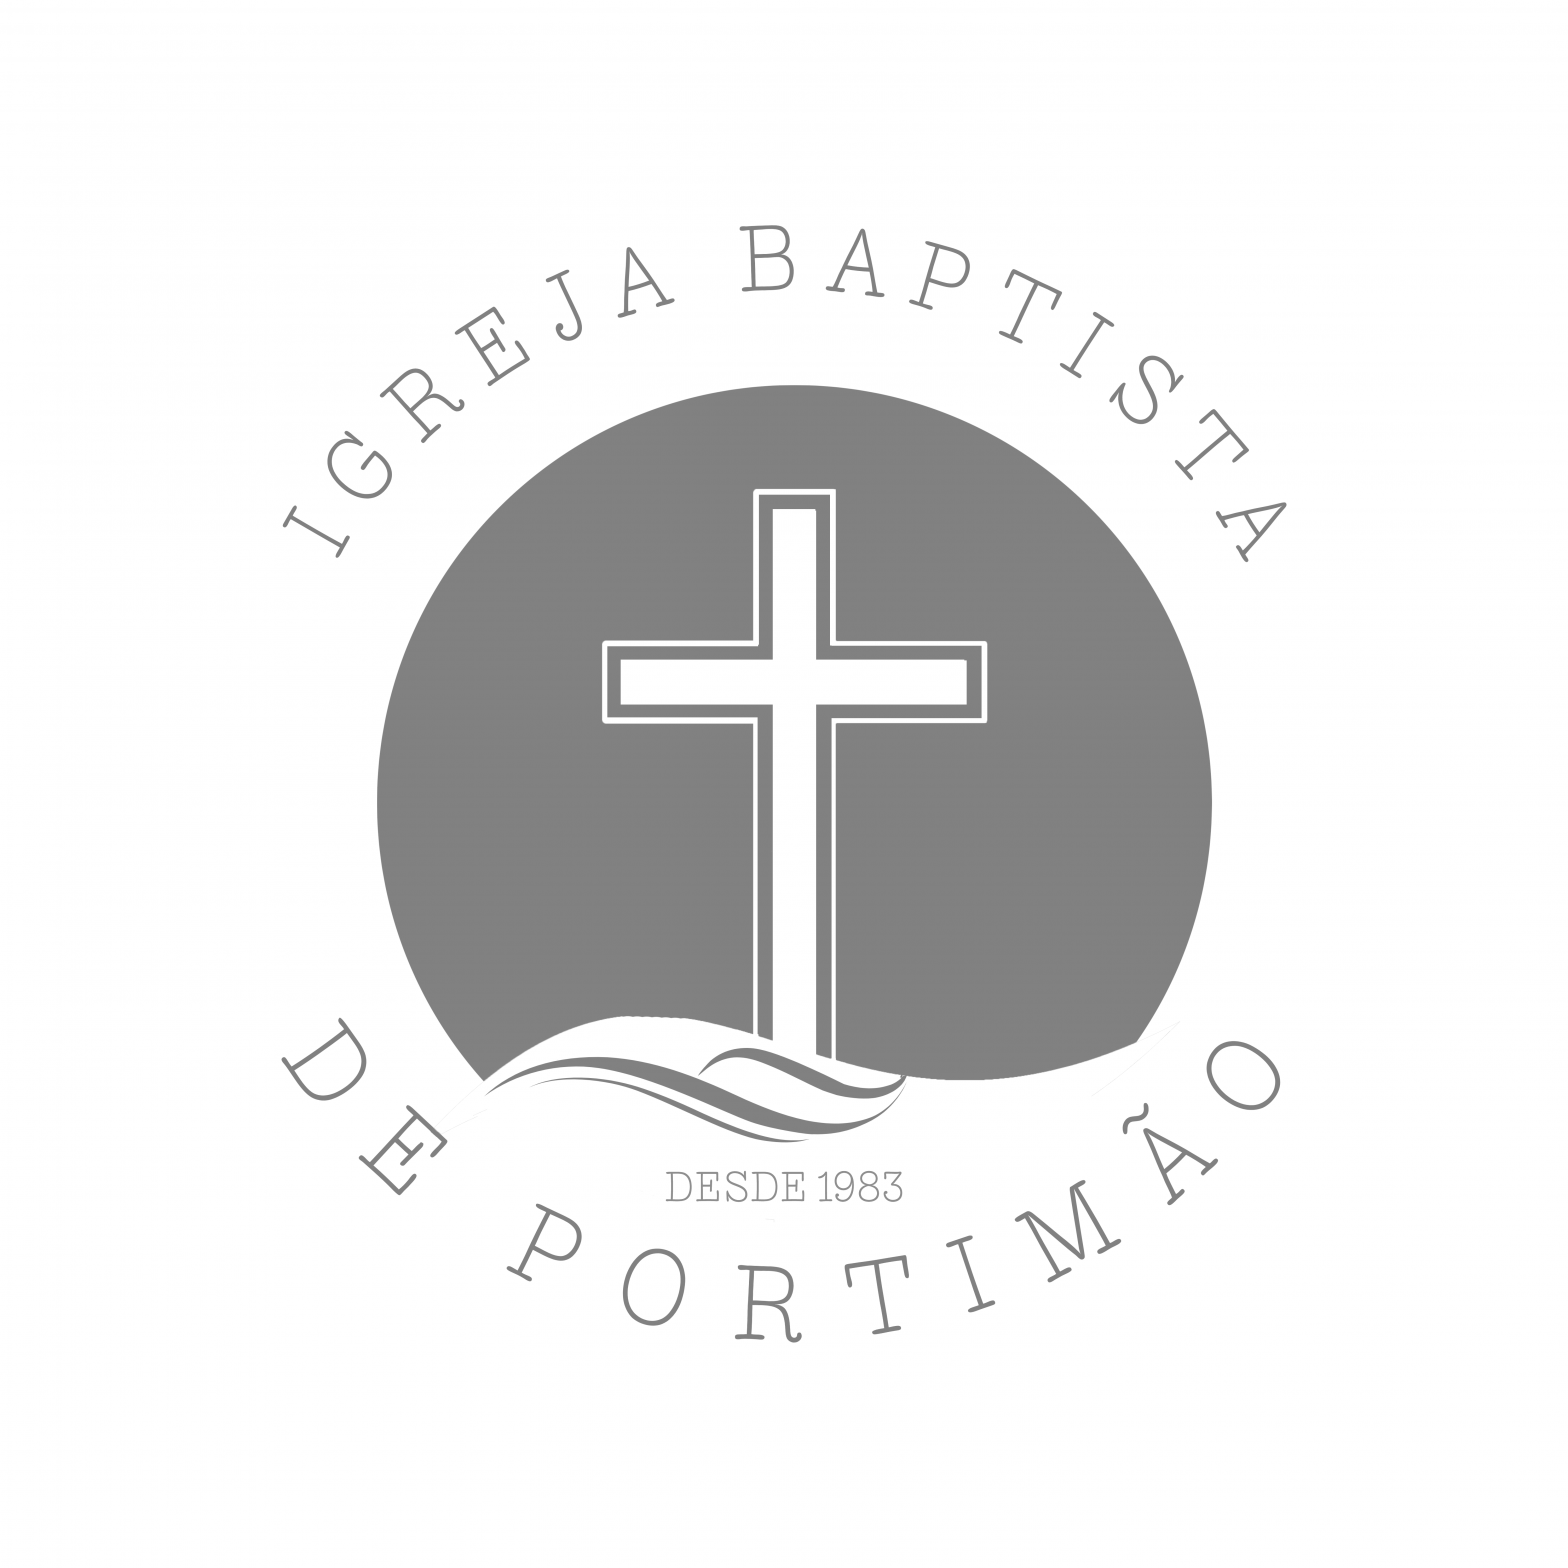 IGREJA BAPTISTA DE PORTIMÃO